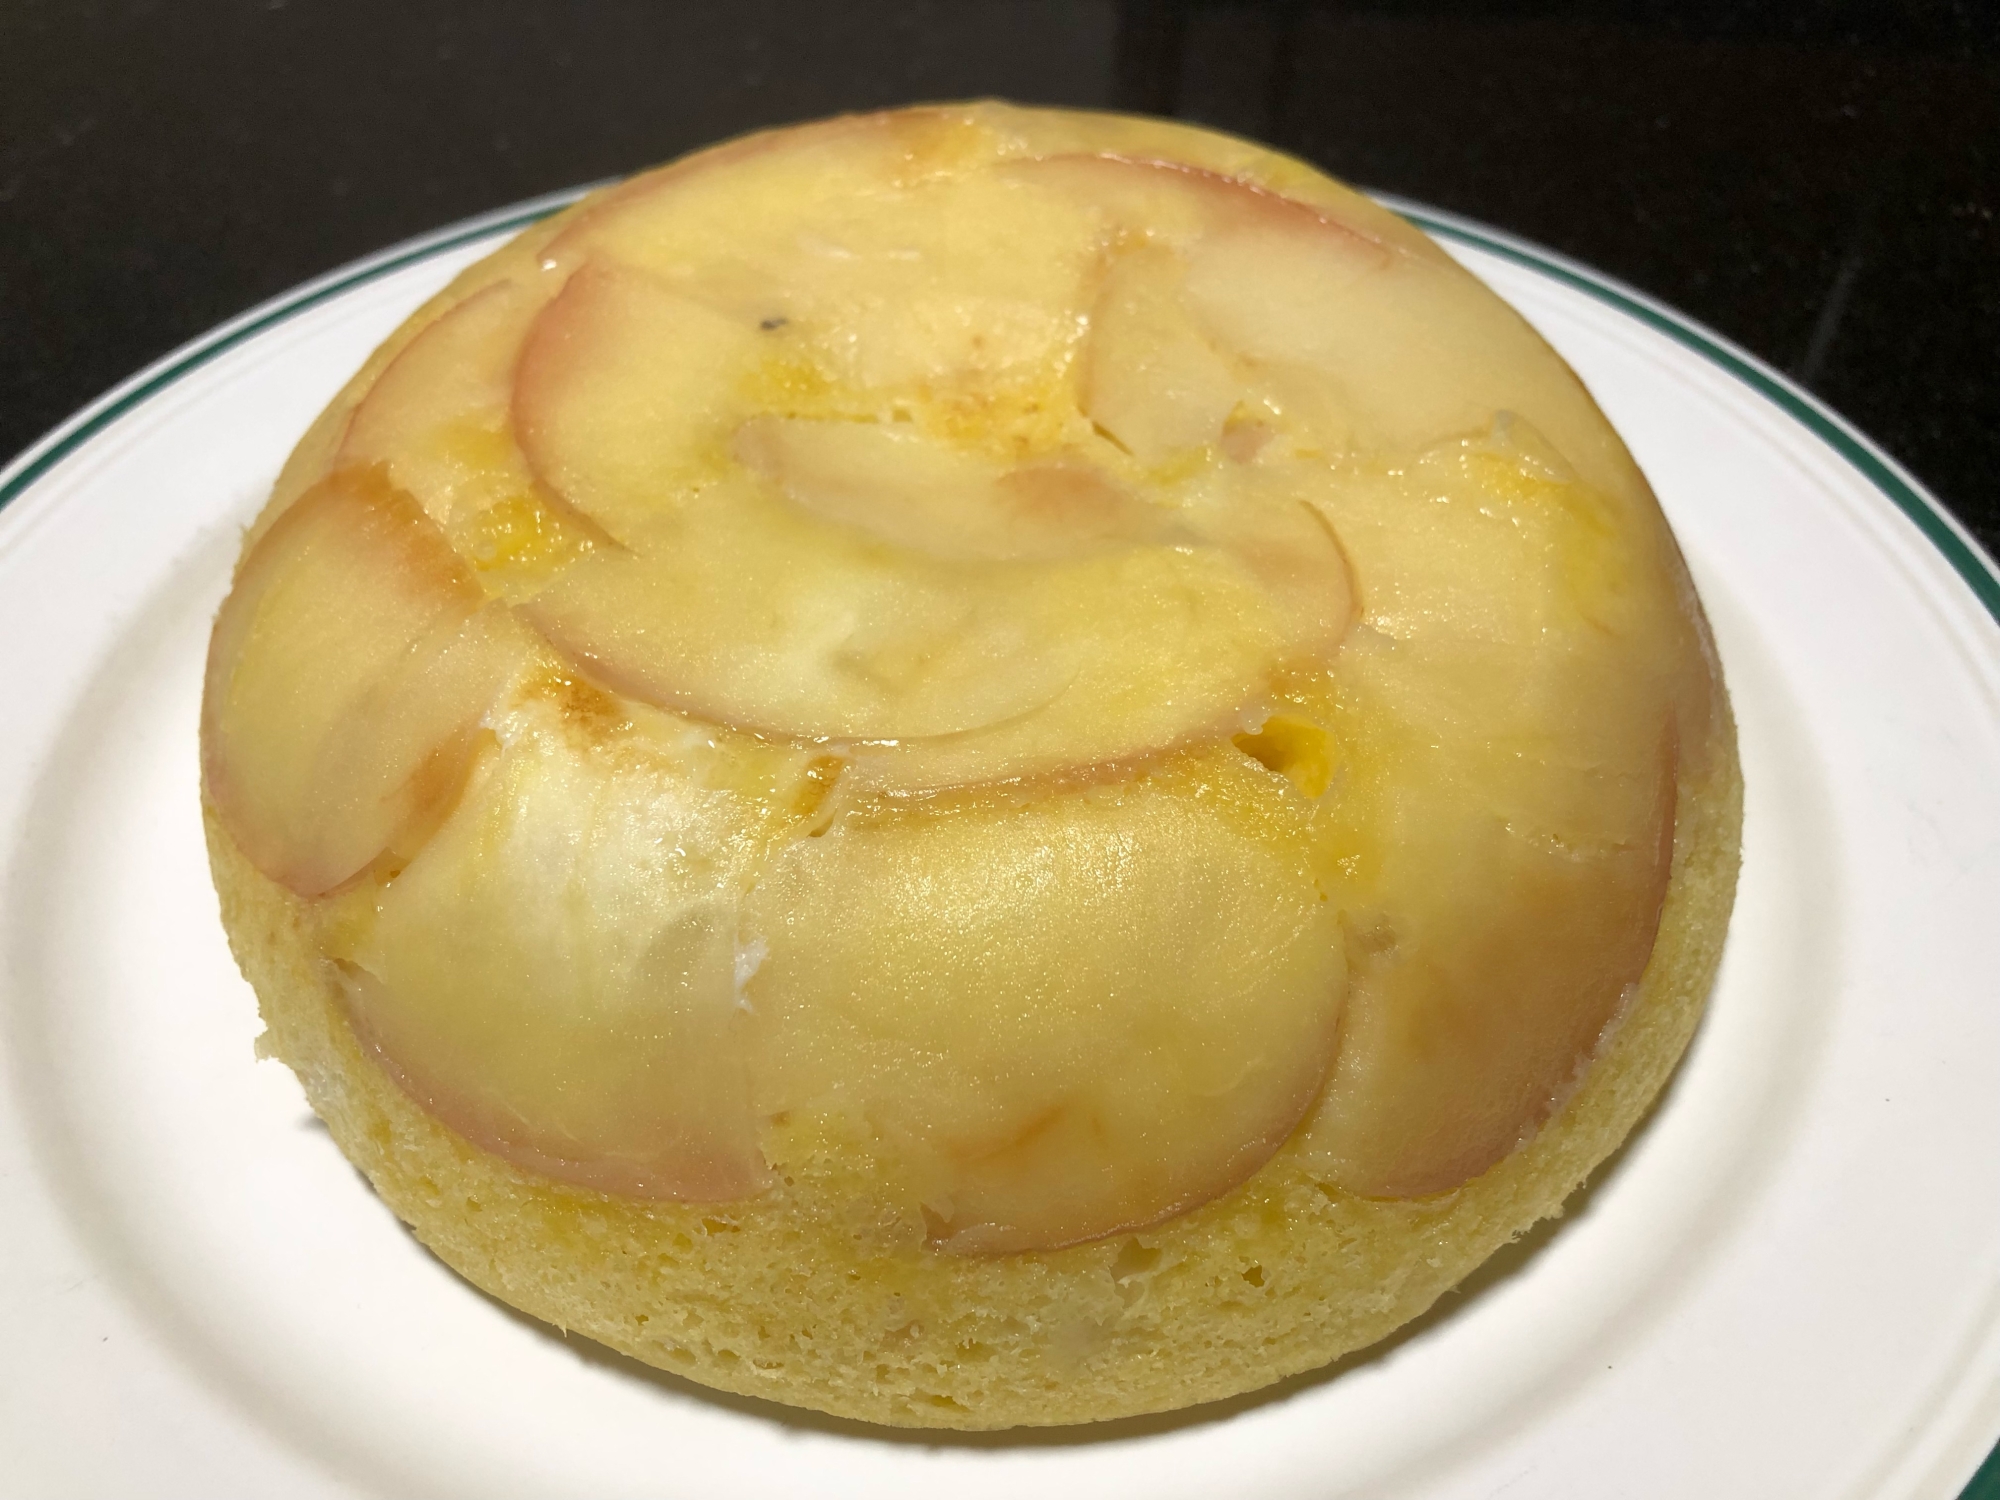 炊飯器で作る甘〜いりんごのパンケーキ☆